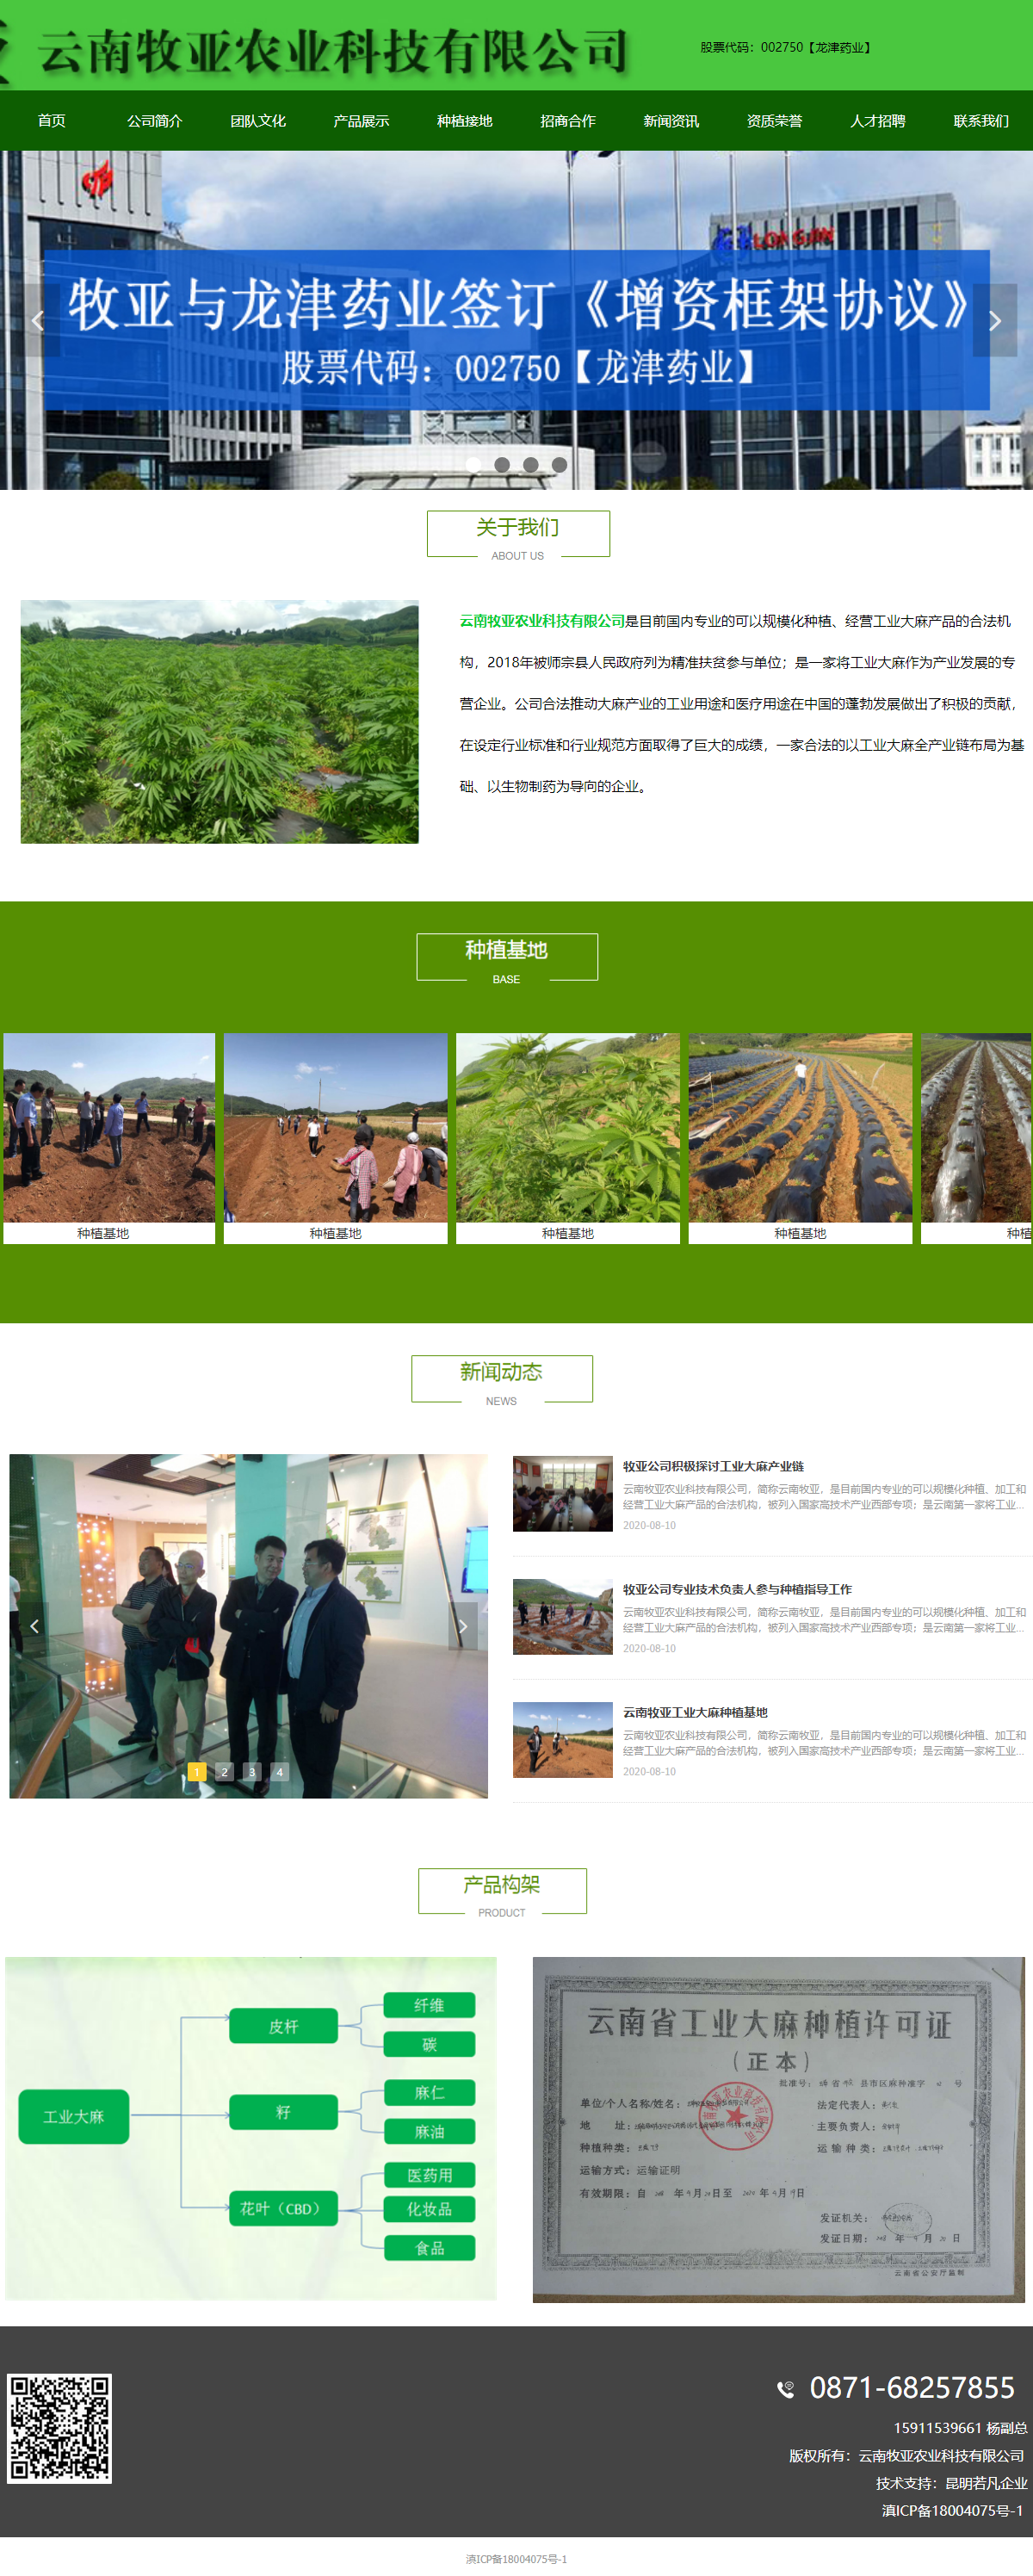 云南牧亚农业科技有限公司网站案例